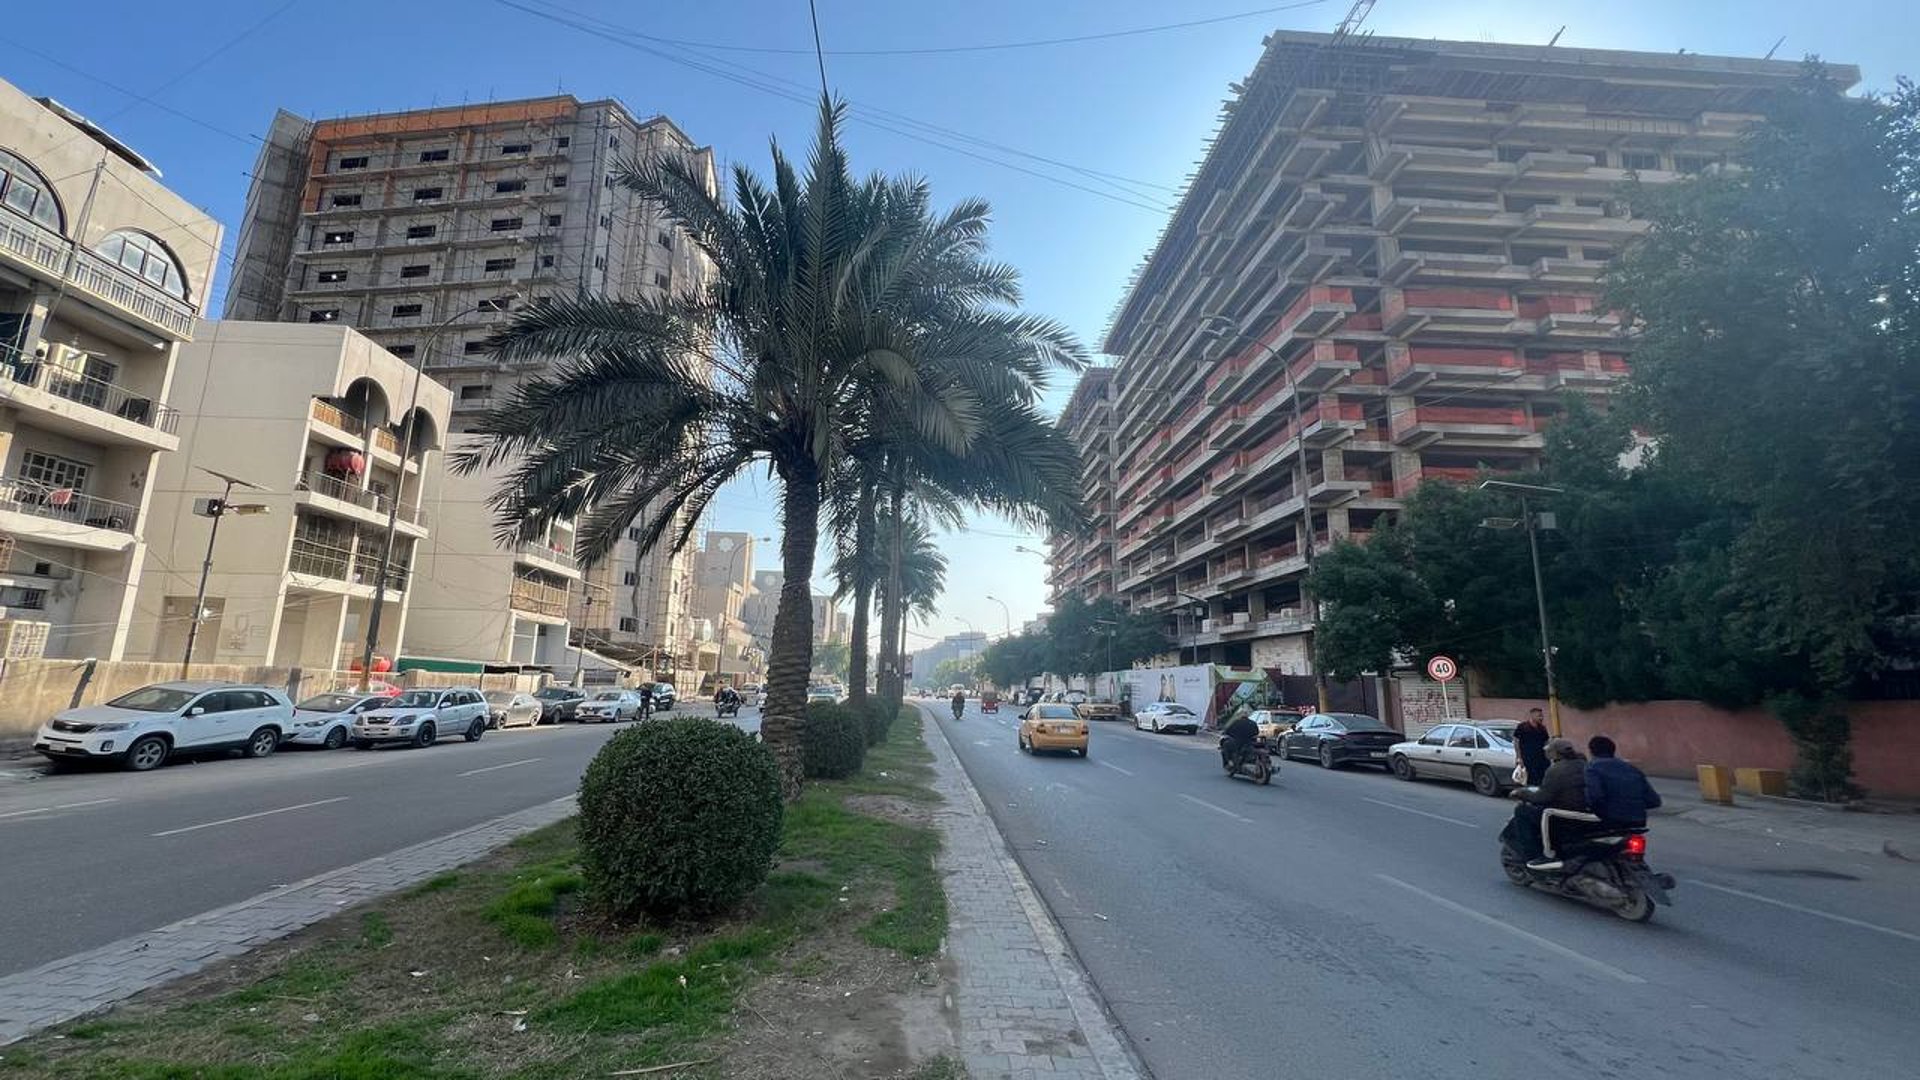 بنايات شارع حيفا الجديدة تثير الجدل بشأن هويته المعمارية.. مع أم ضد؟